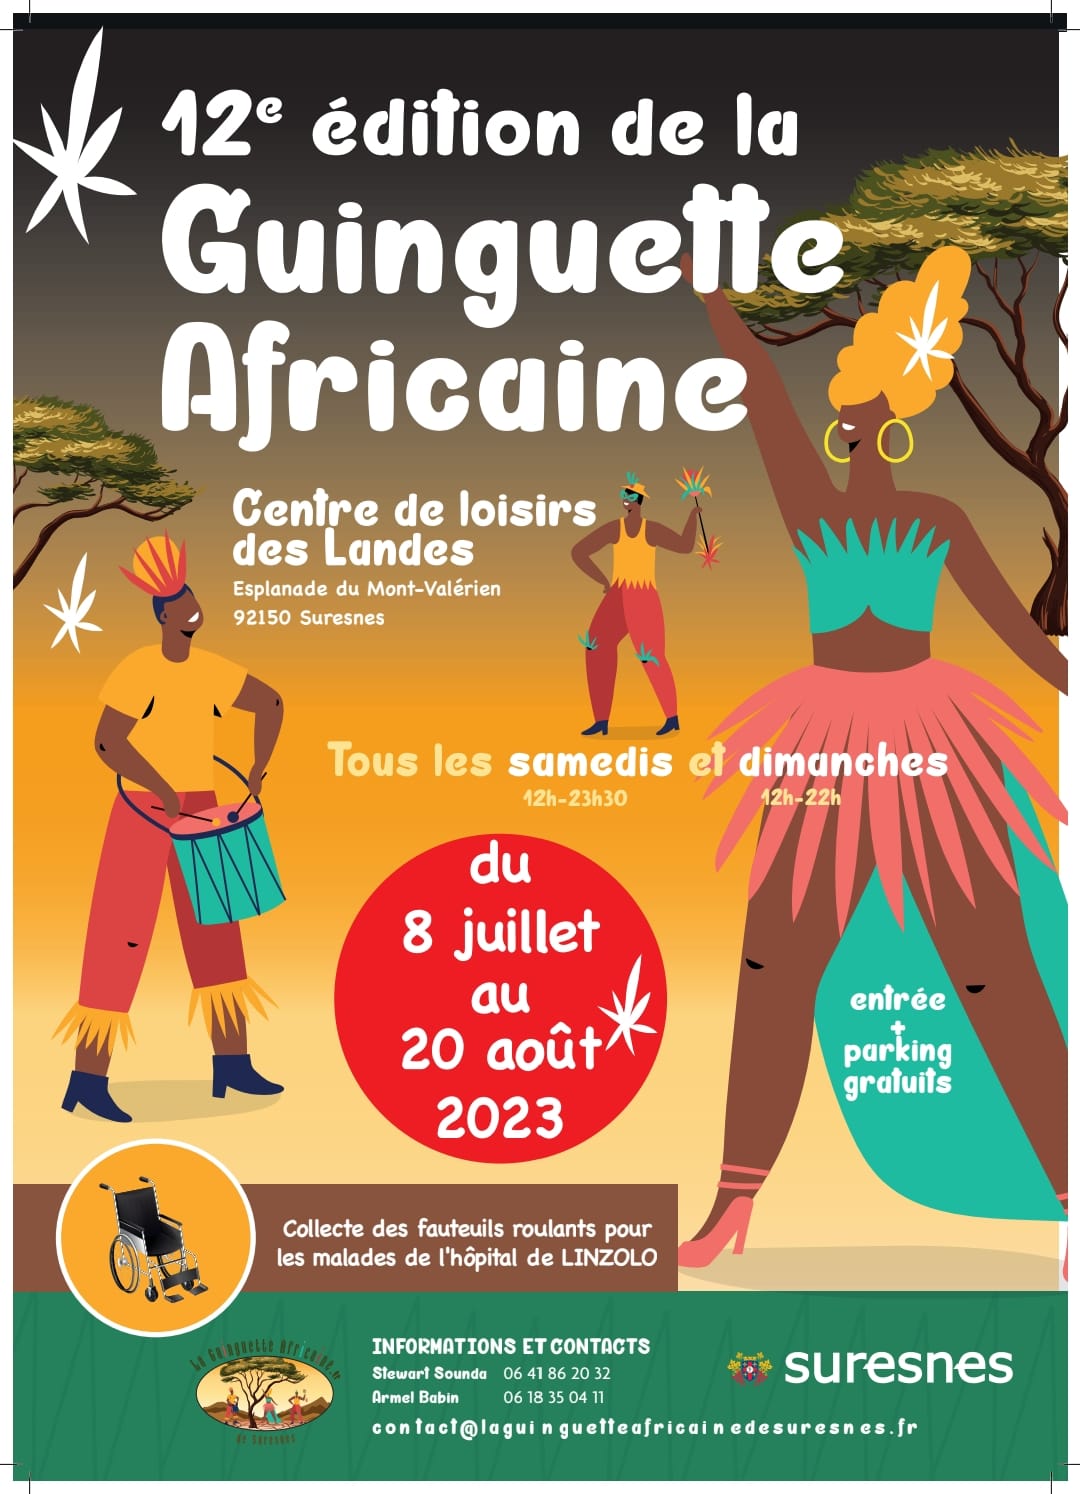 Affiche 12e édition de la guinguette africaine de Suresnes, France